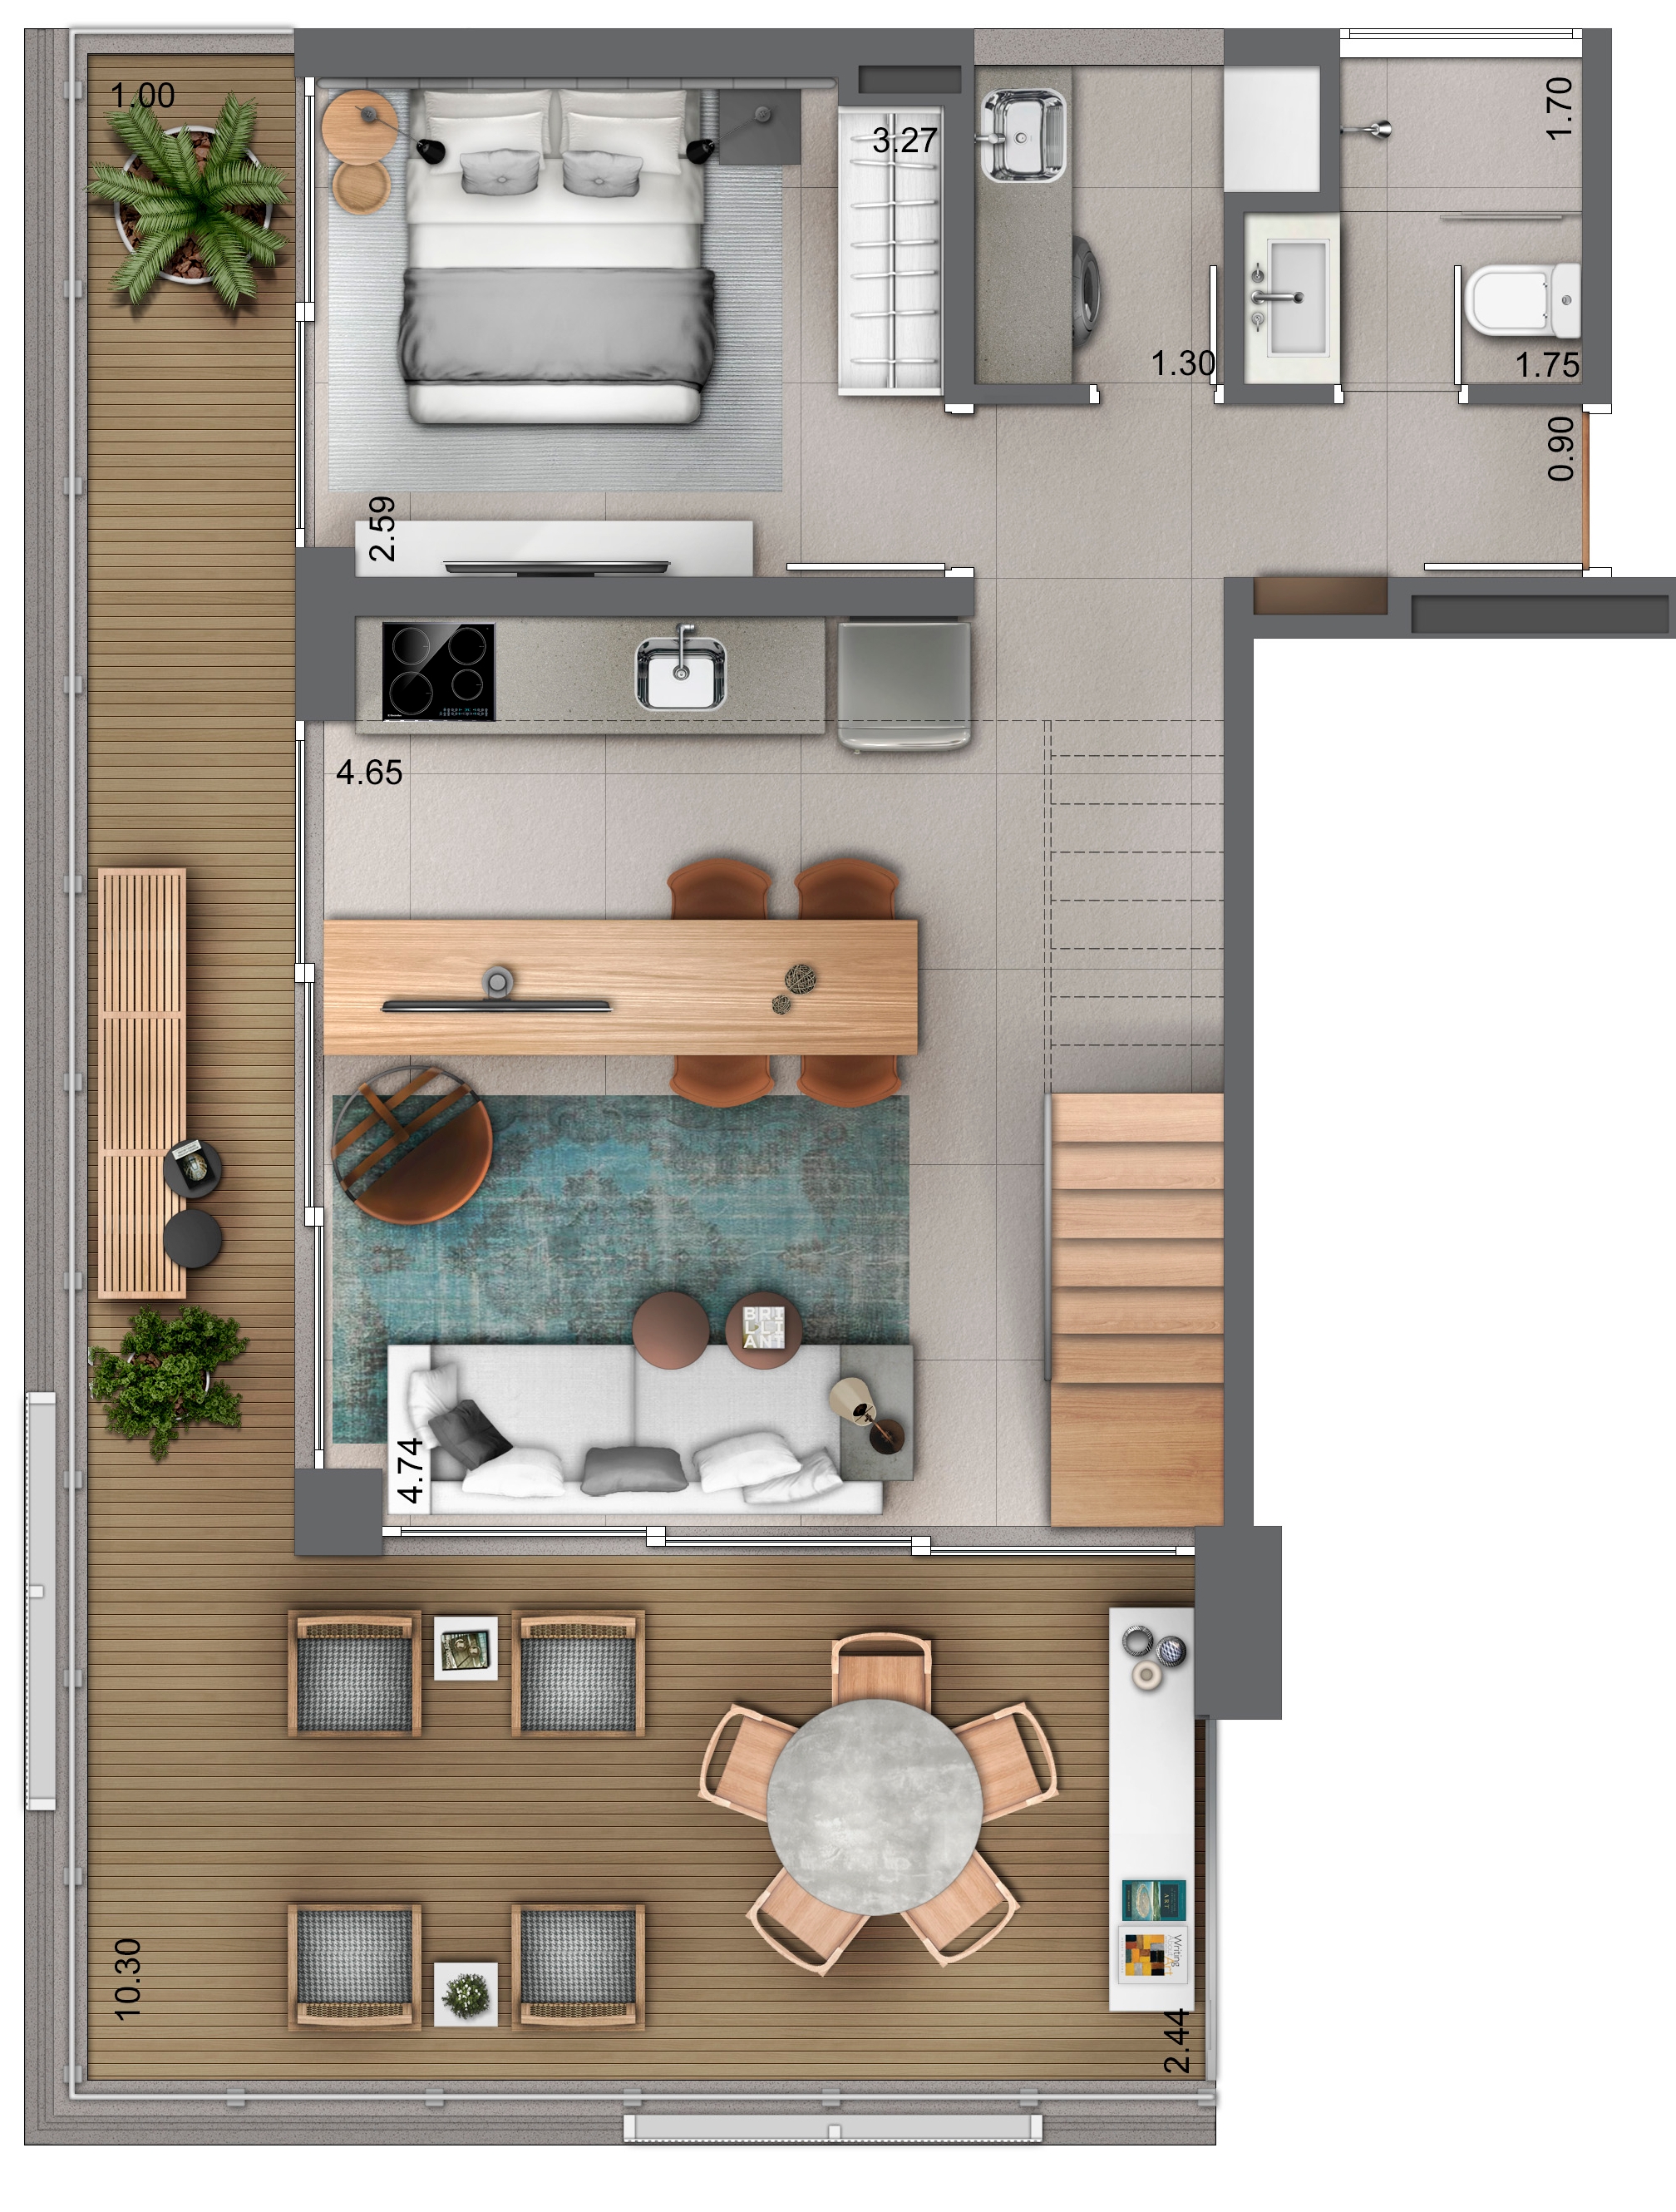 Duplex 89 m² - Piso superior